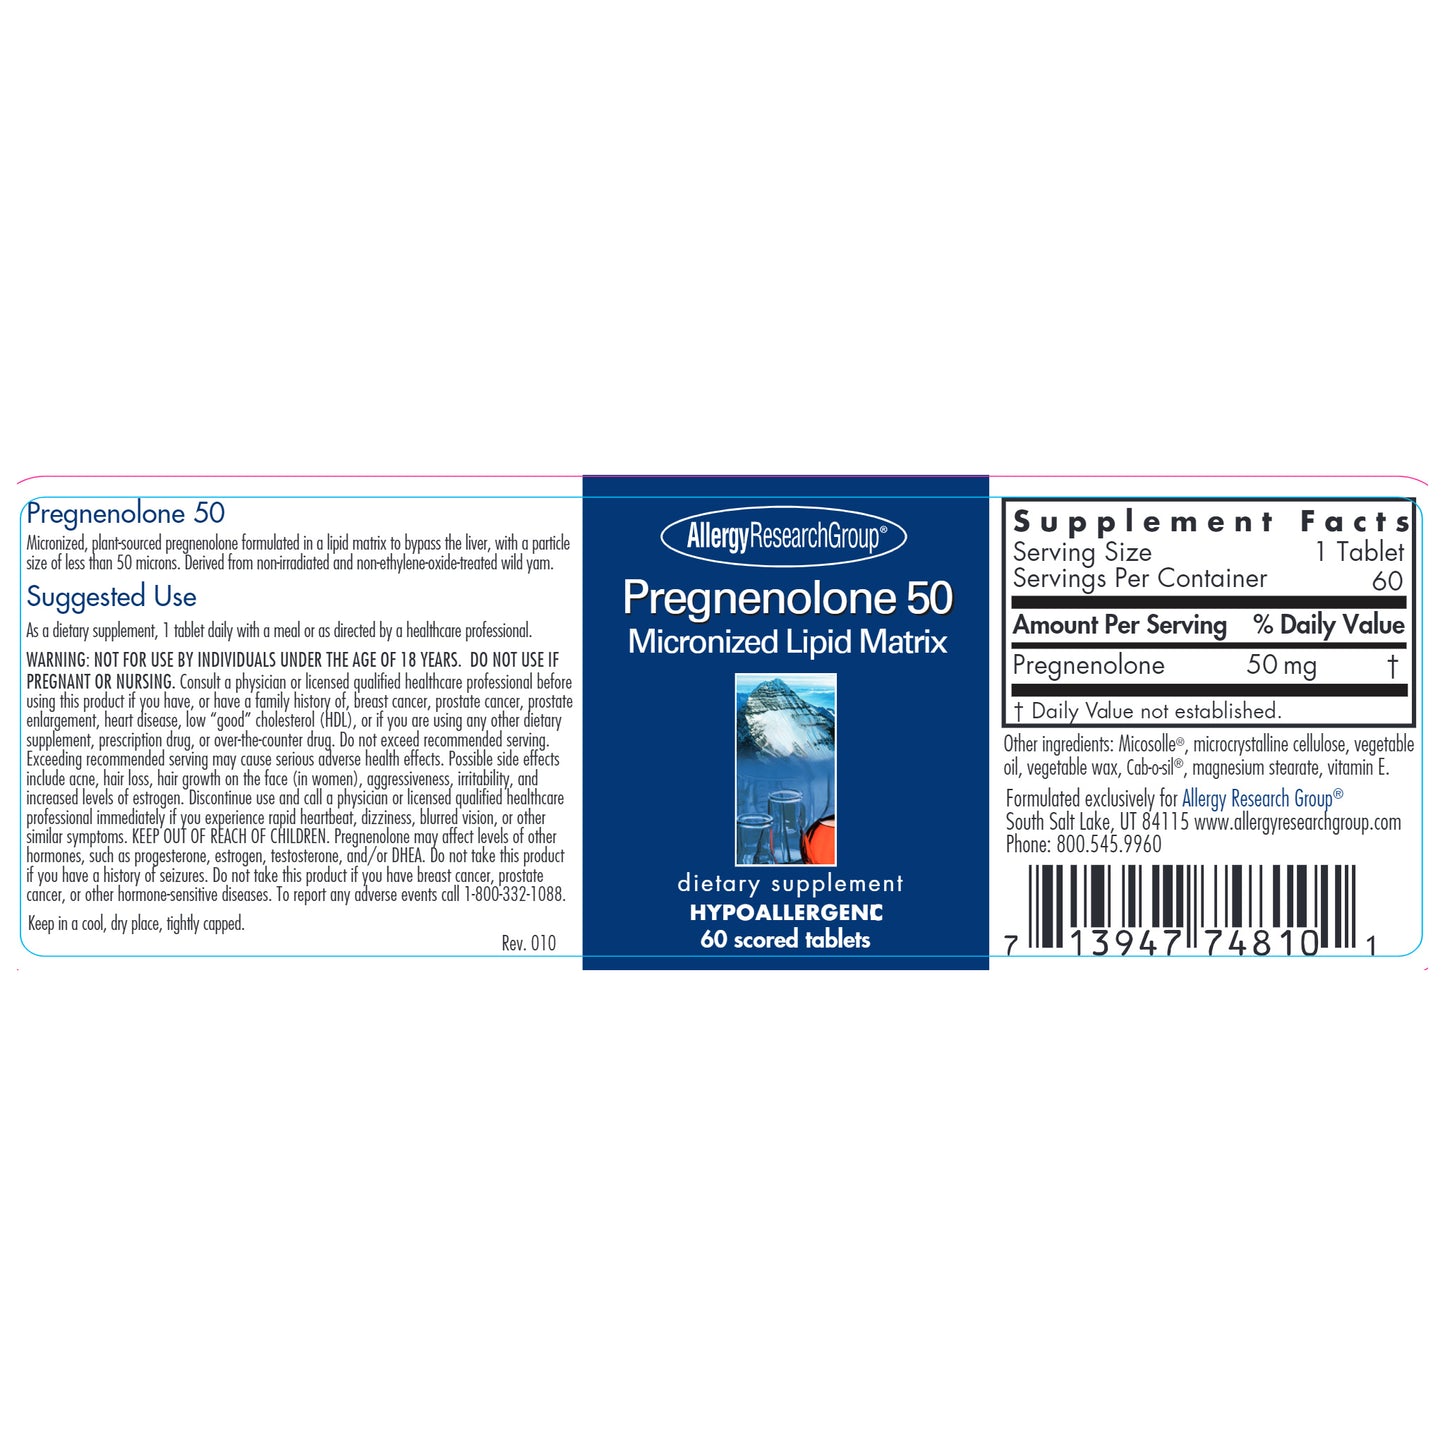 Pregnenolone 50 mg Micronized Lipid Matrix 60 Tablets